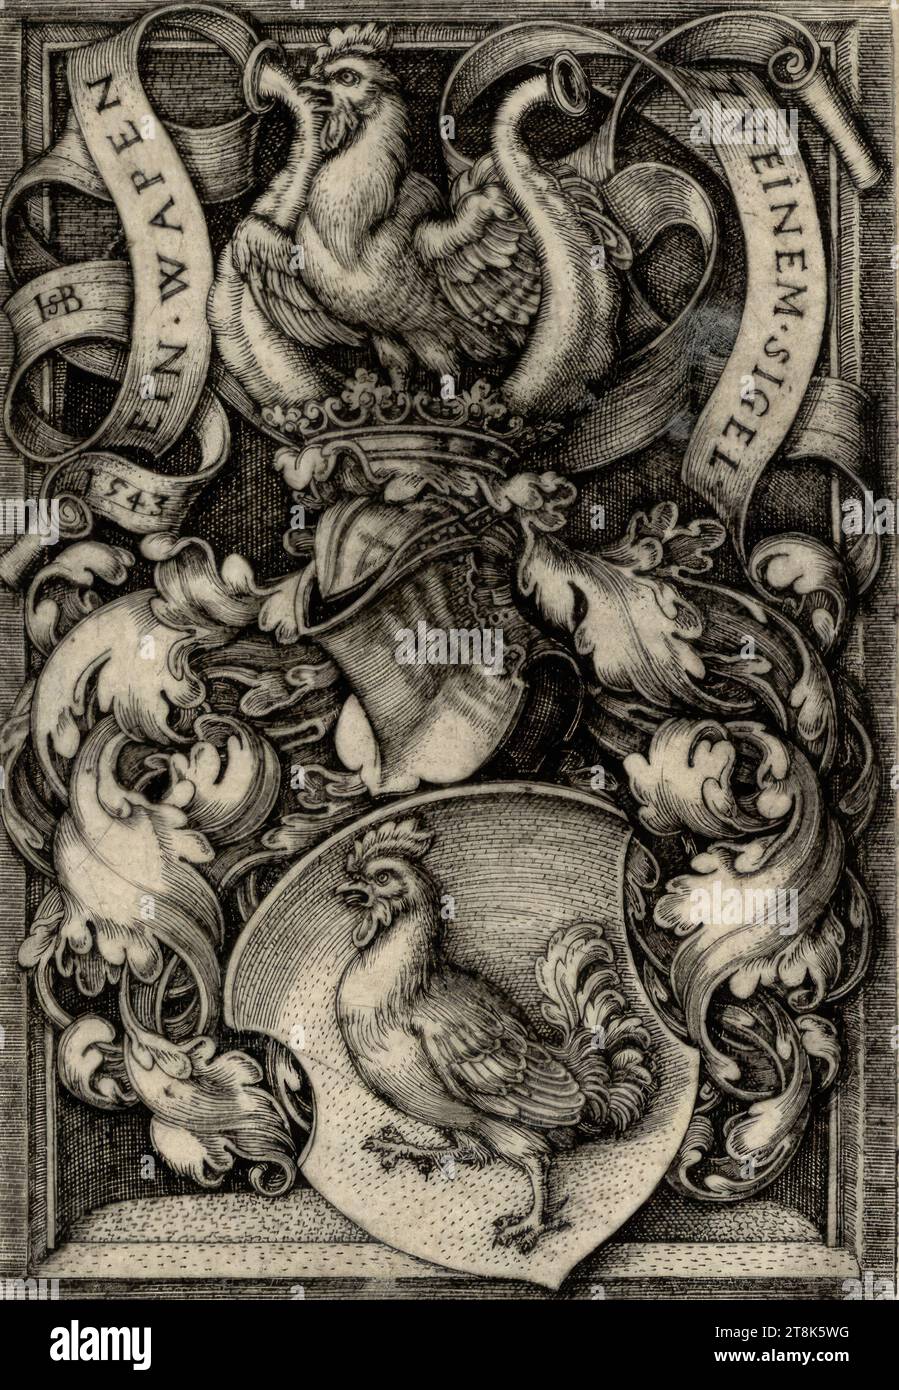 Lo stemma con il gallo, Sebald Beham, Norimberga 1500 - 1550 Francoforte sul meno, 1543, stampa, incisione in rame Foto Stock